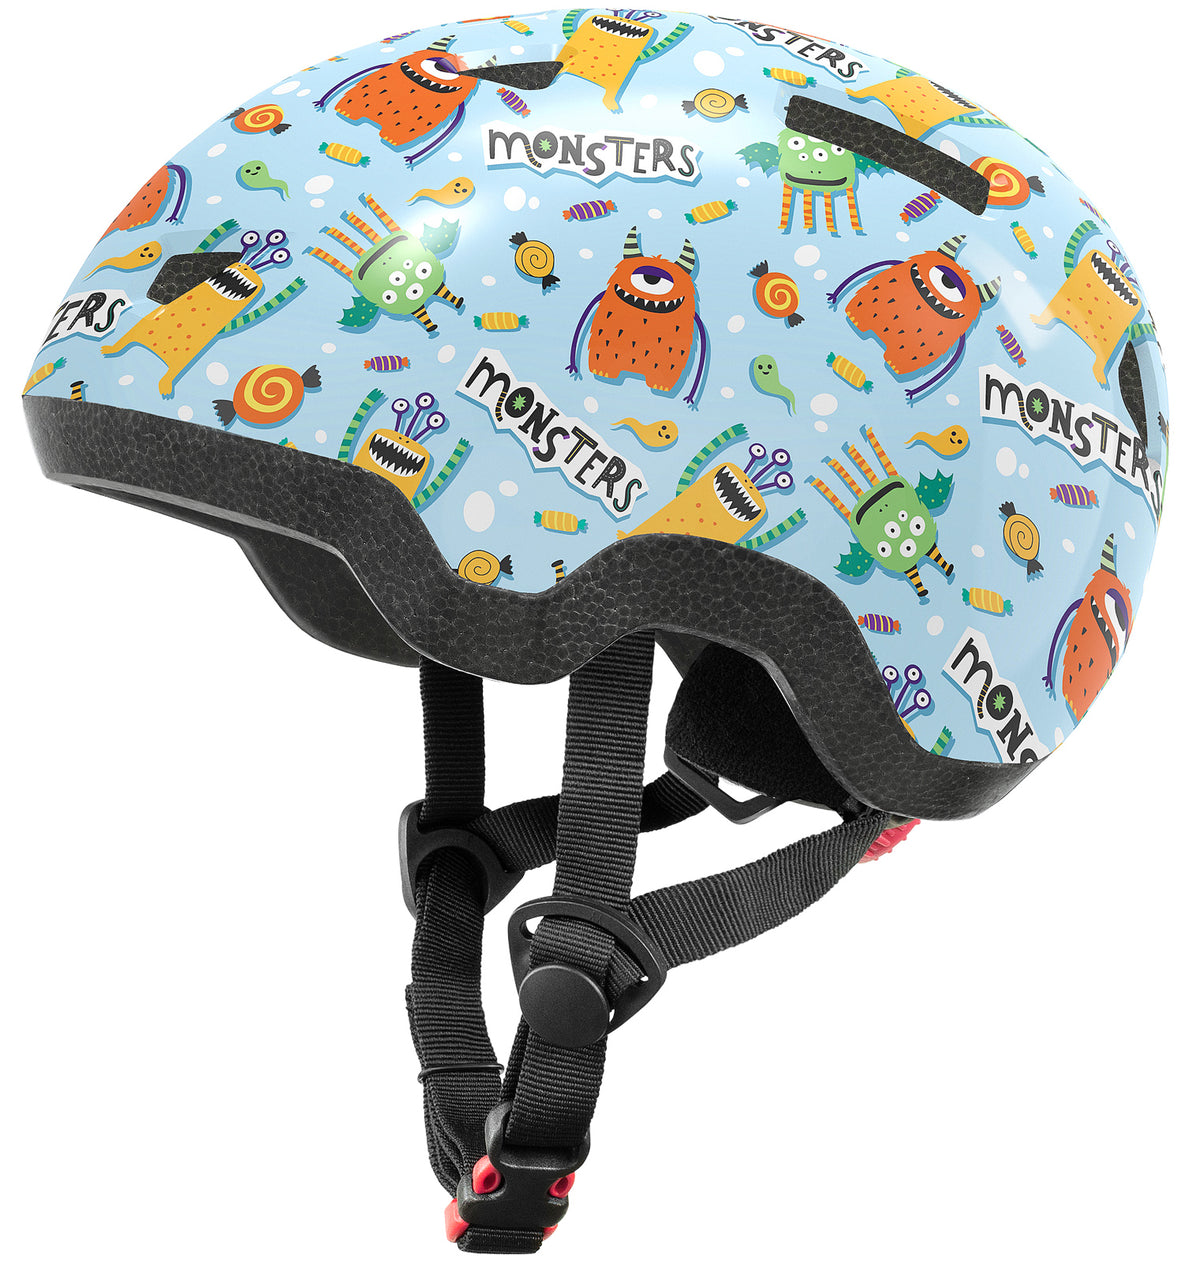 Kids/Toddler Bike/Skateboard Helmet, Blue Monster